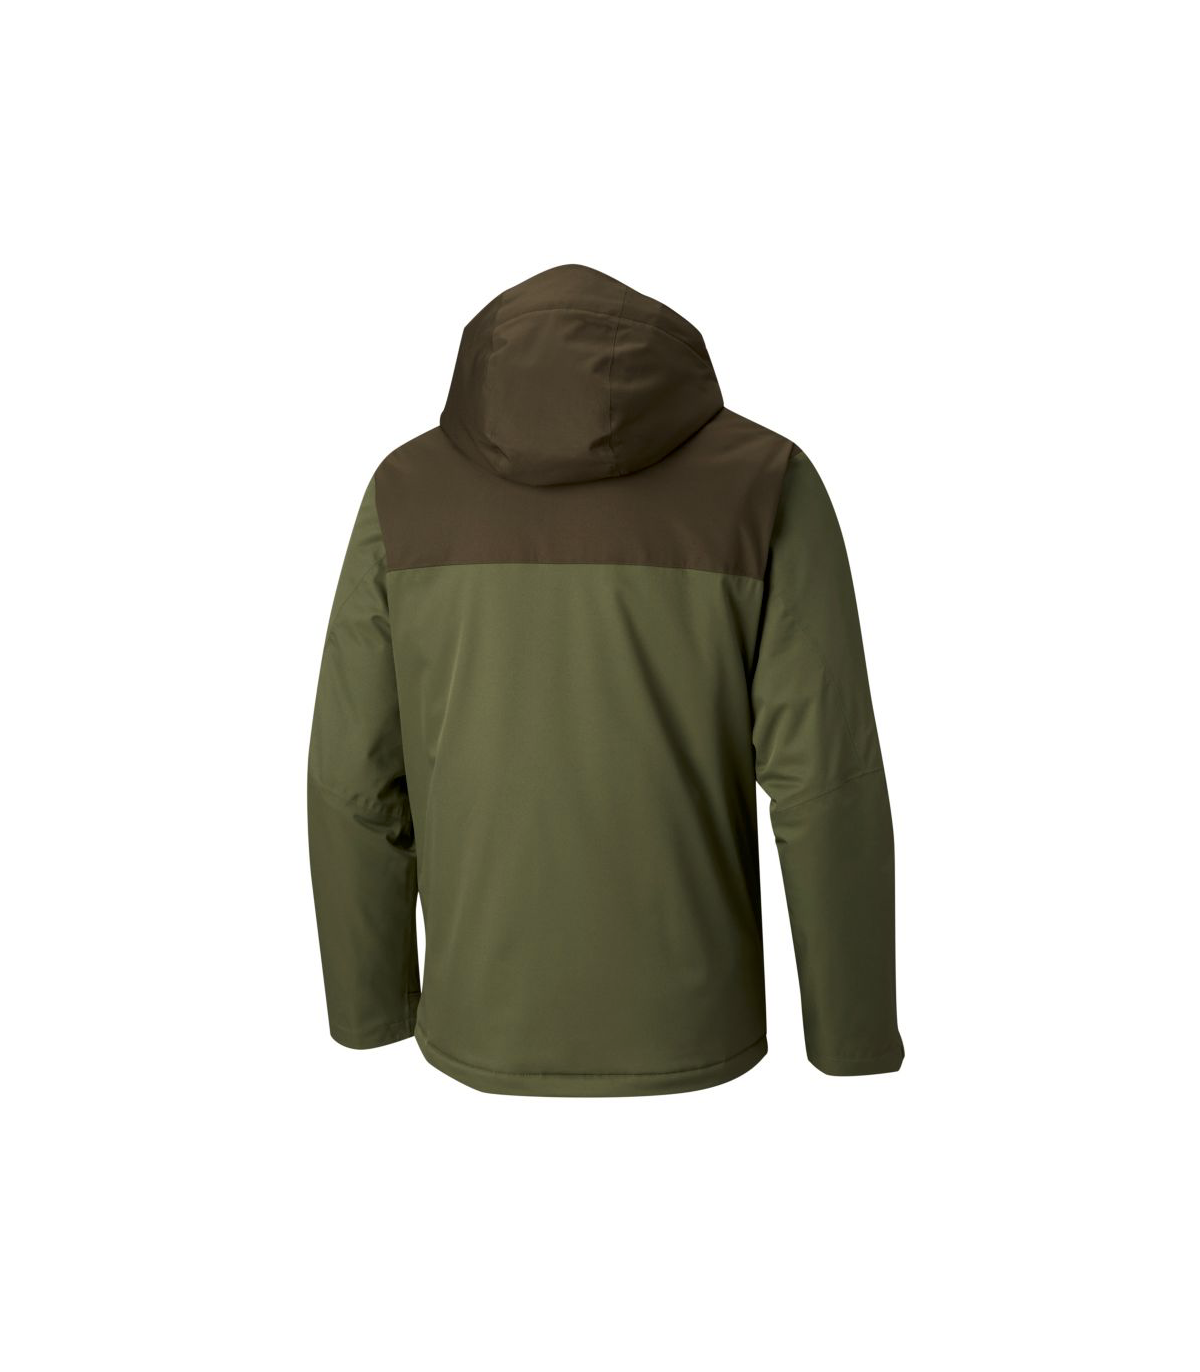 columbia everett mountain jacket